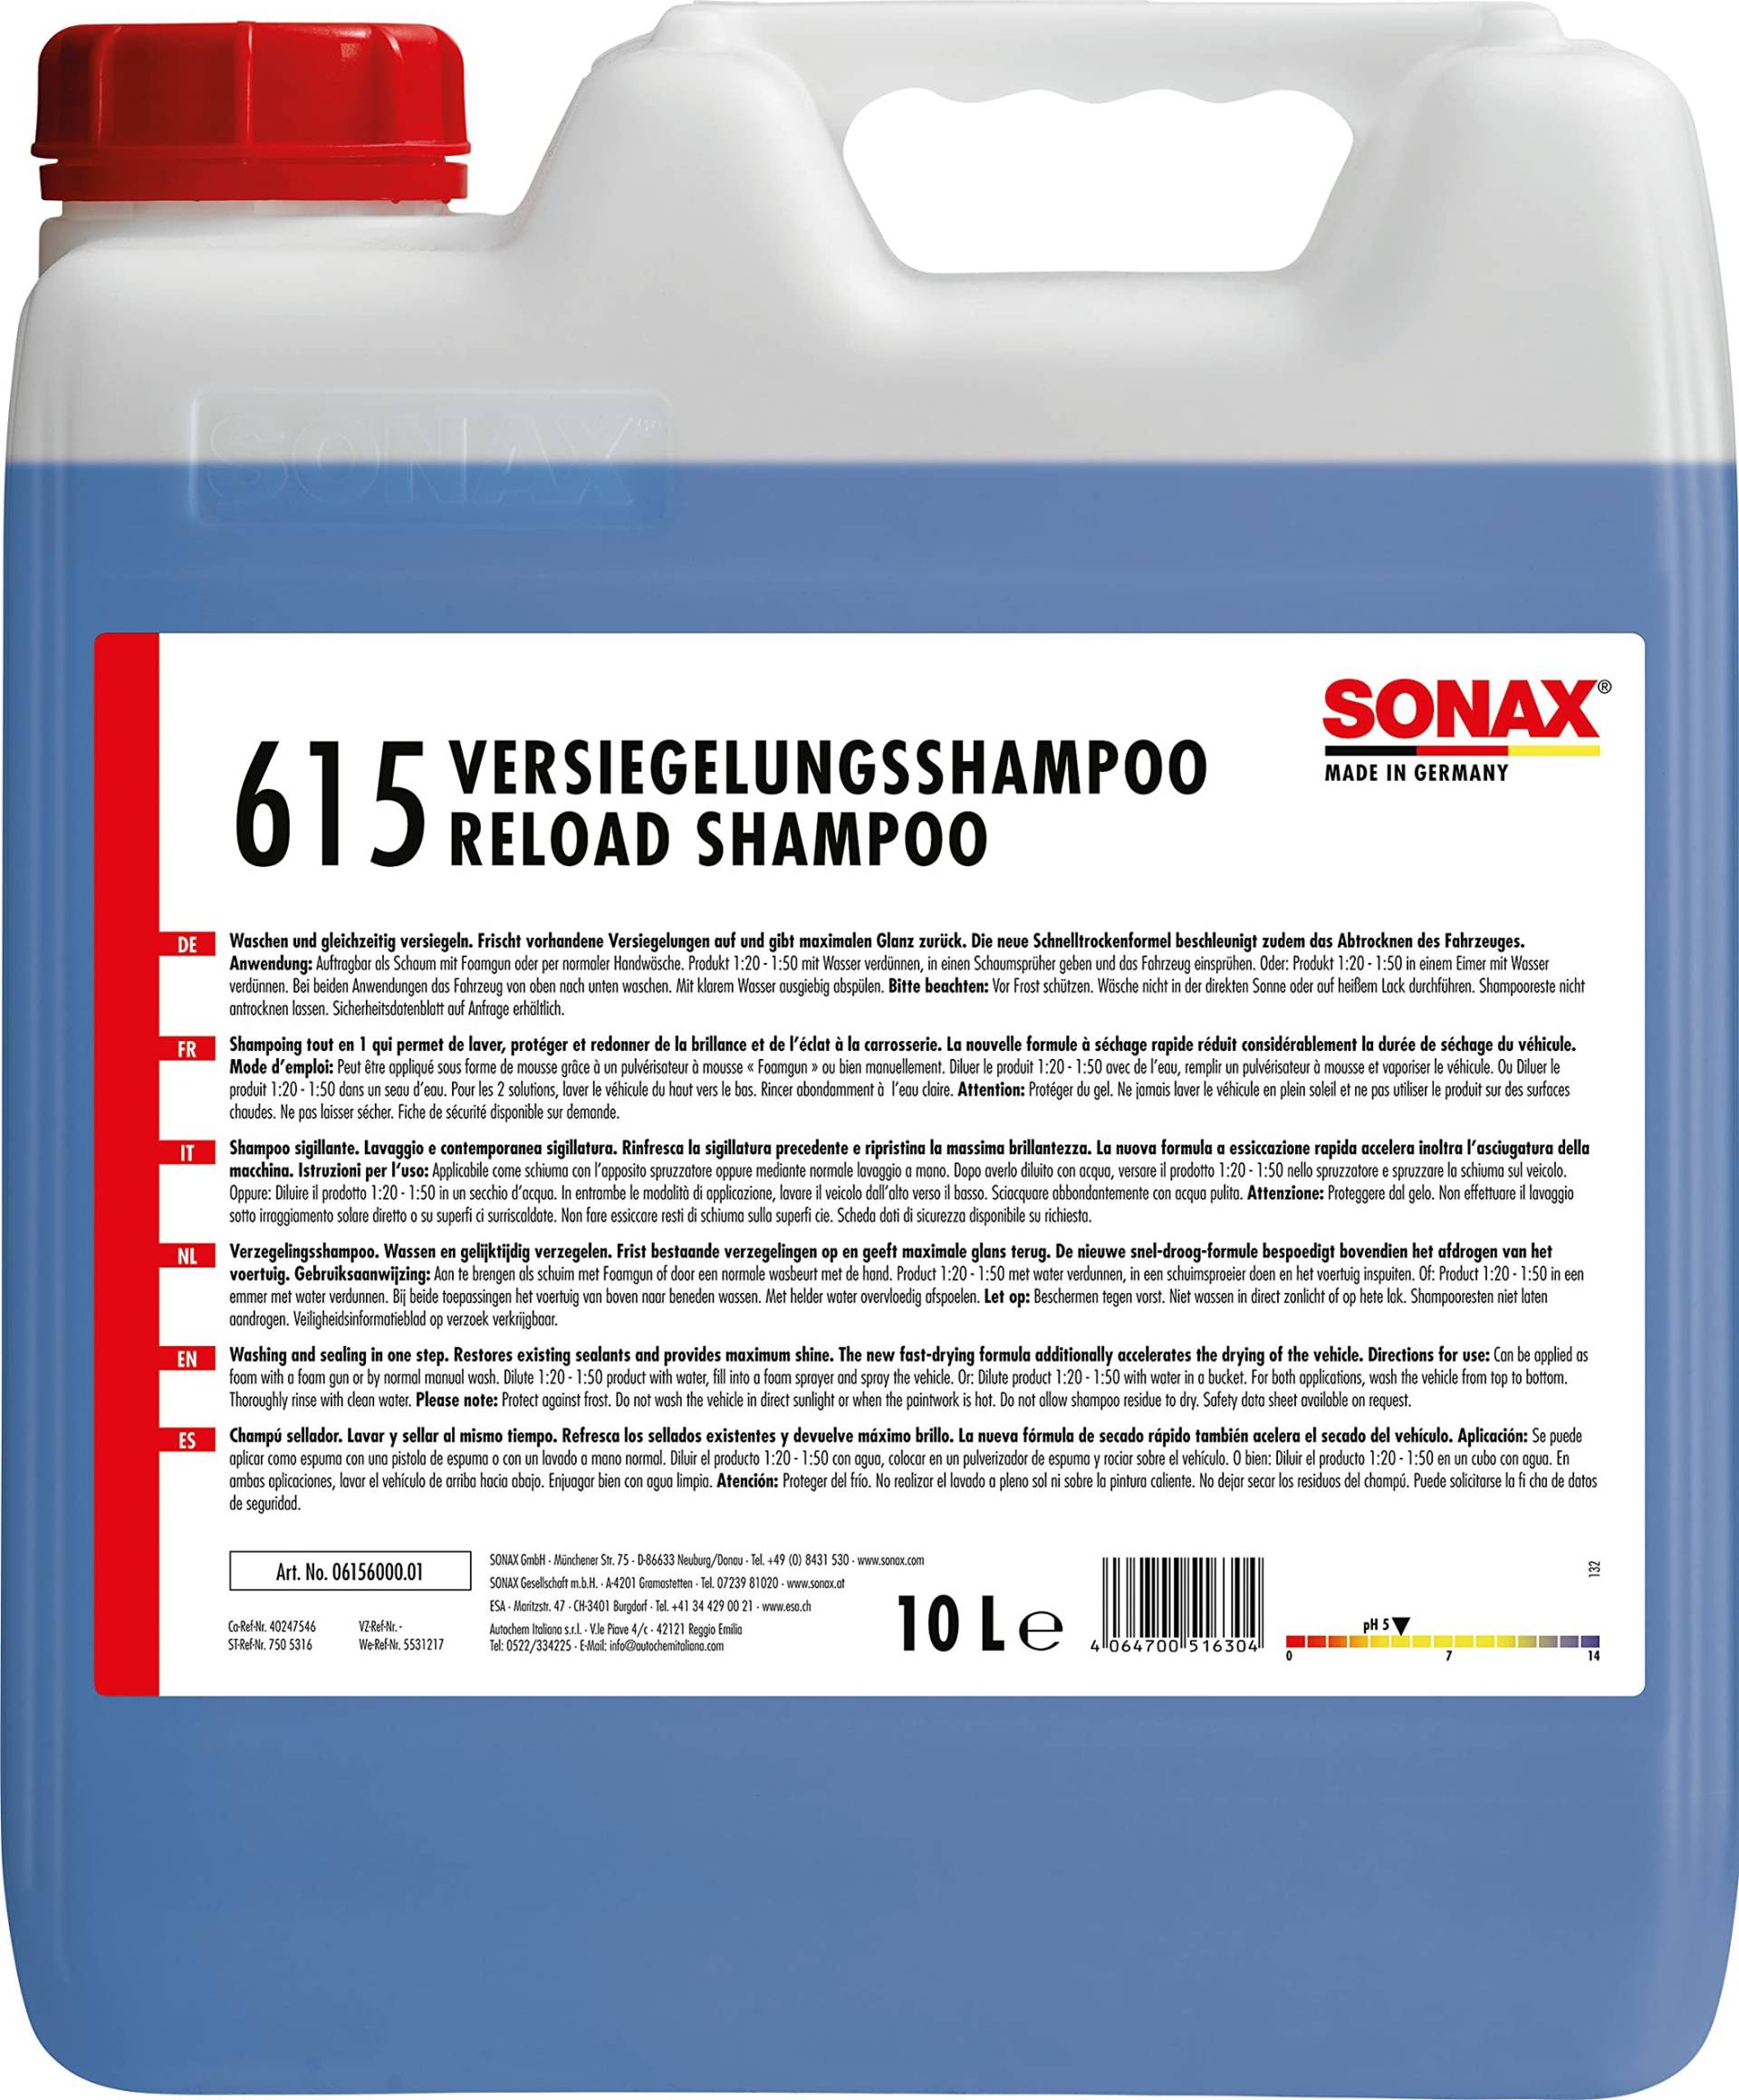 SONAX PROFILINE Reload Shampoo (10 Liter) frischt vorhandene Versiegelungen auf und gibt maximalen Glanz zurück | Art-Nr. 06156000 von SONAX